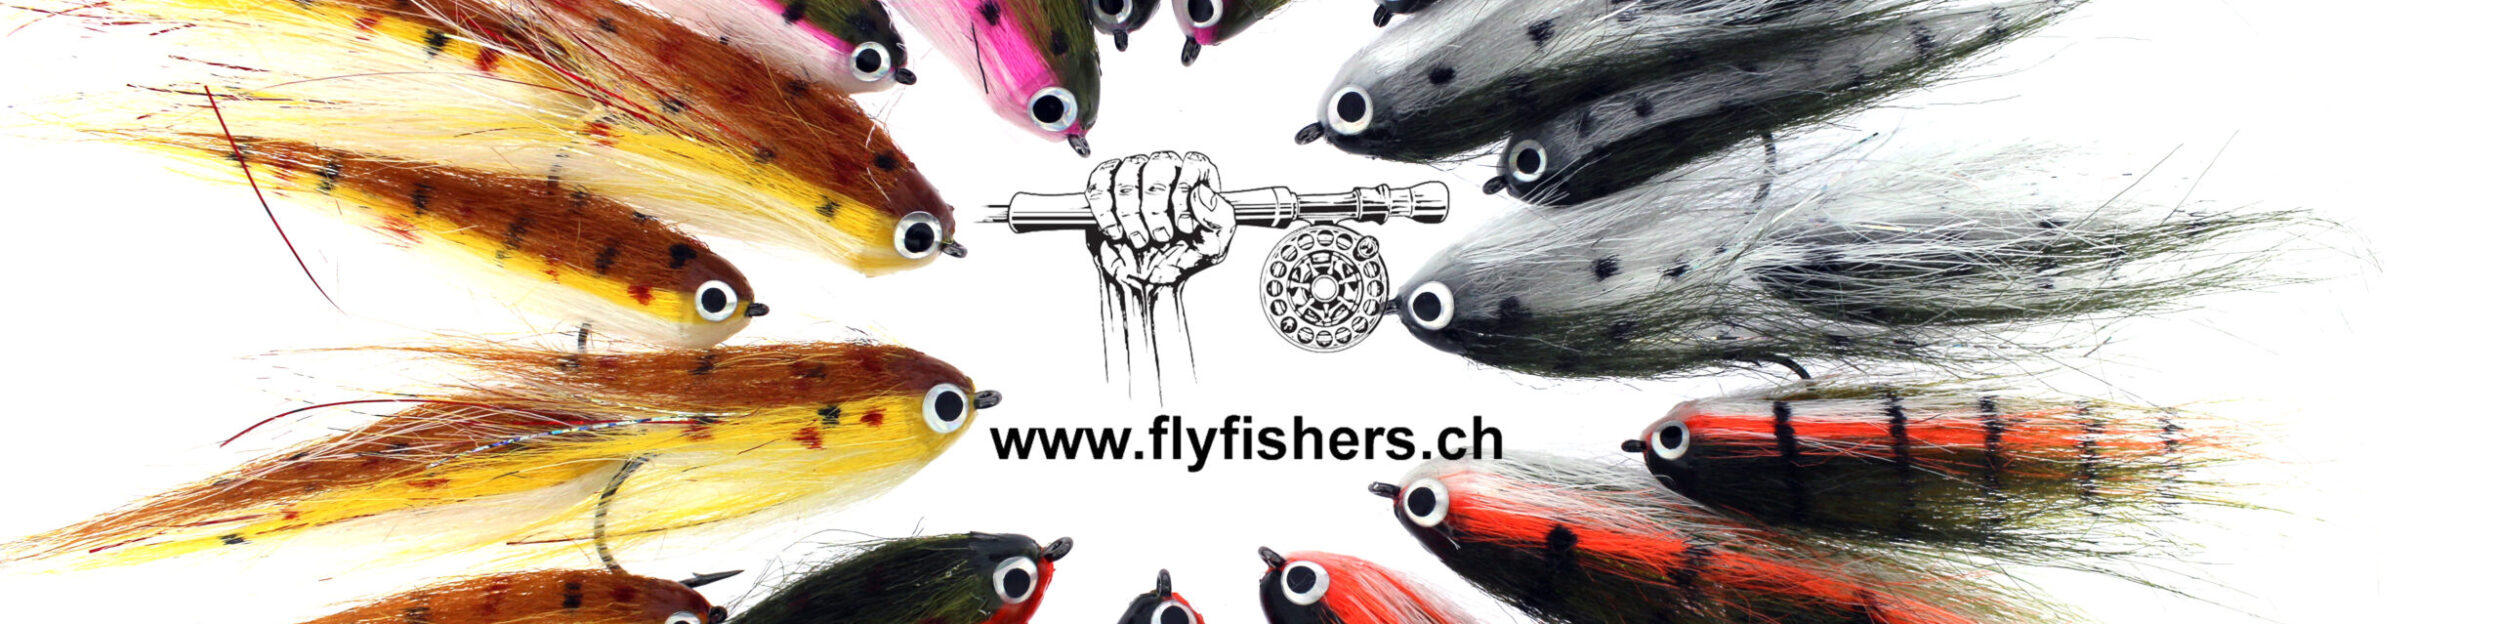 Flyfishers.ch